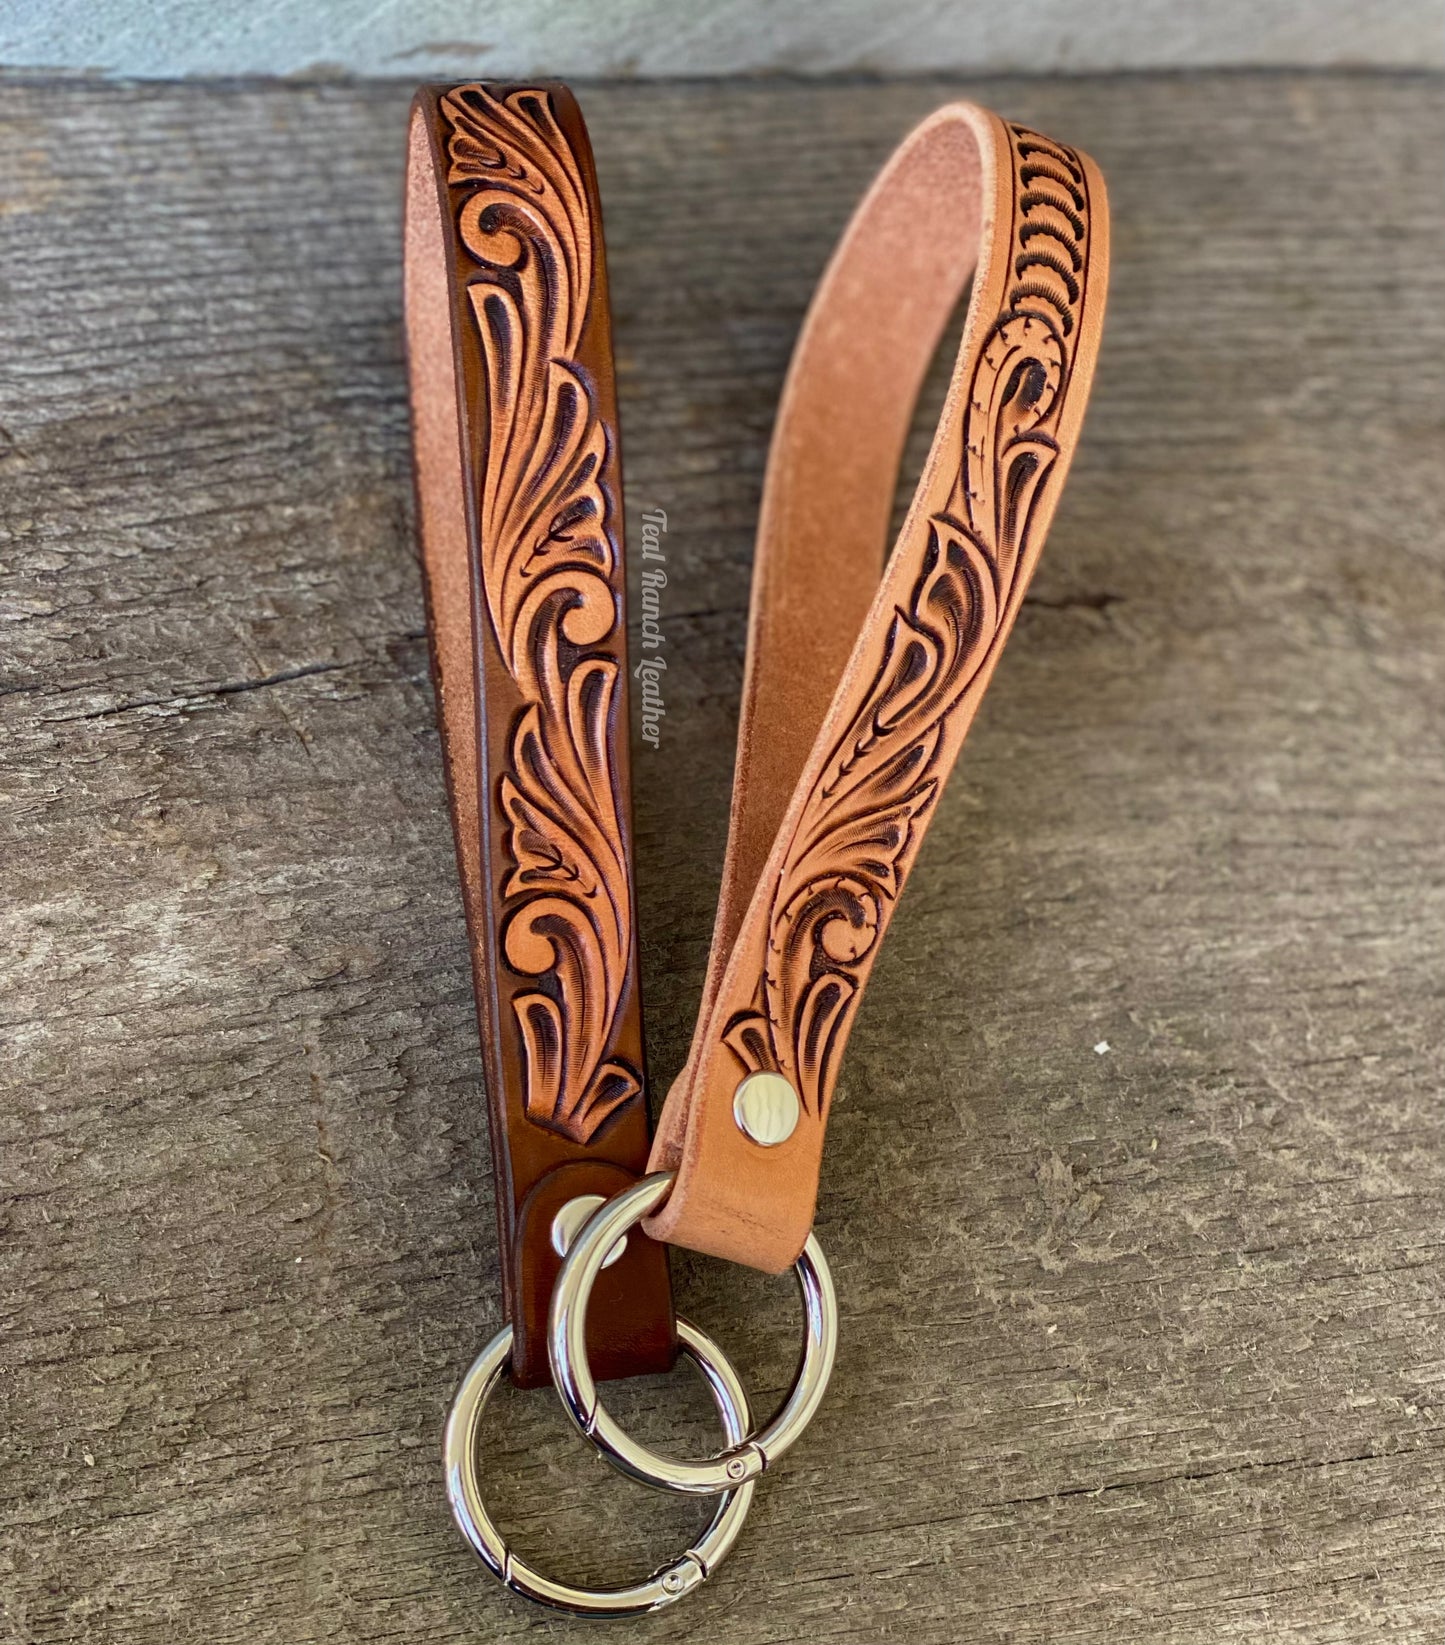 Tooled leather keychain lanyards